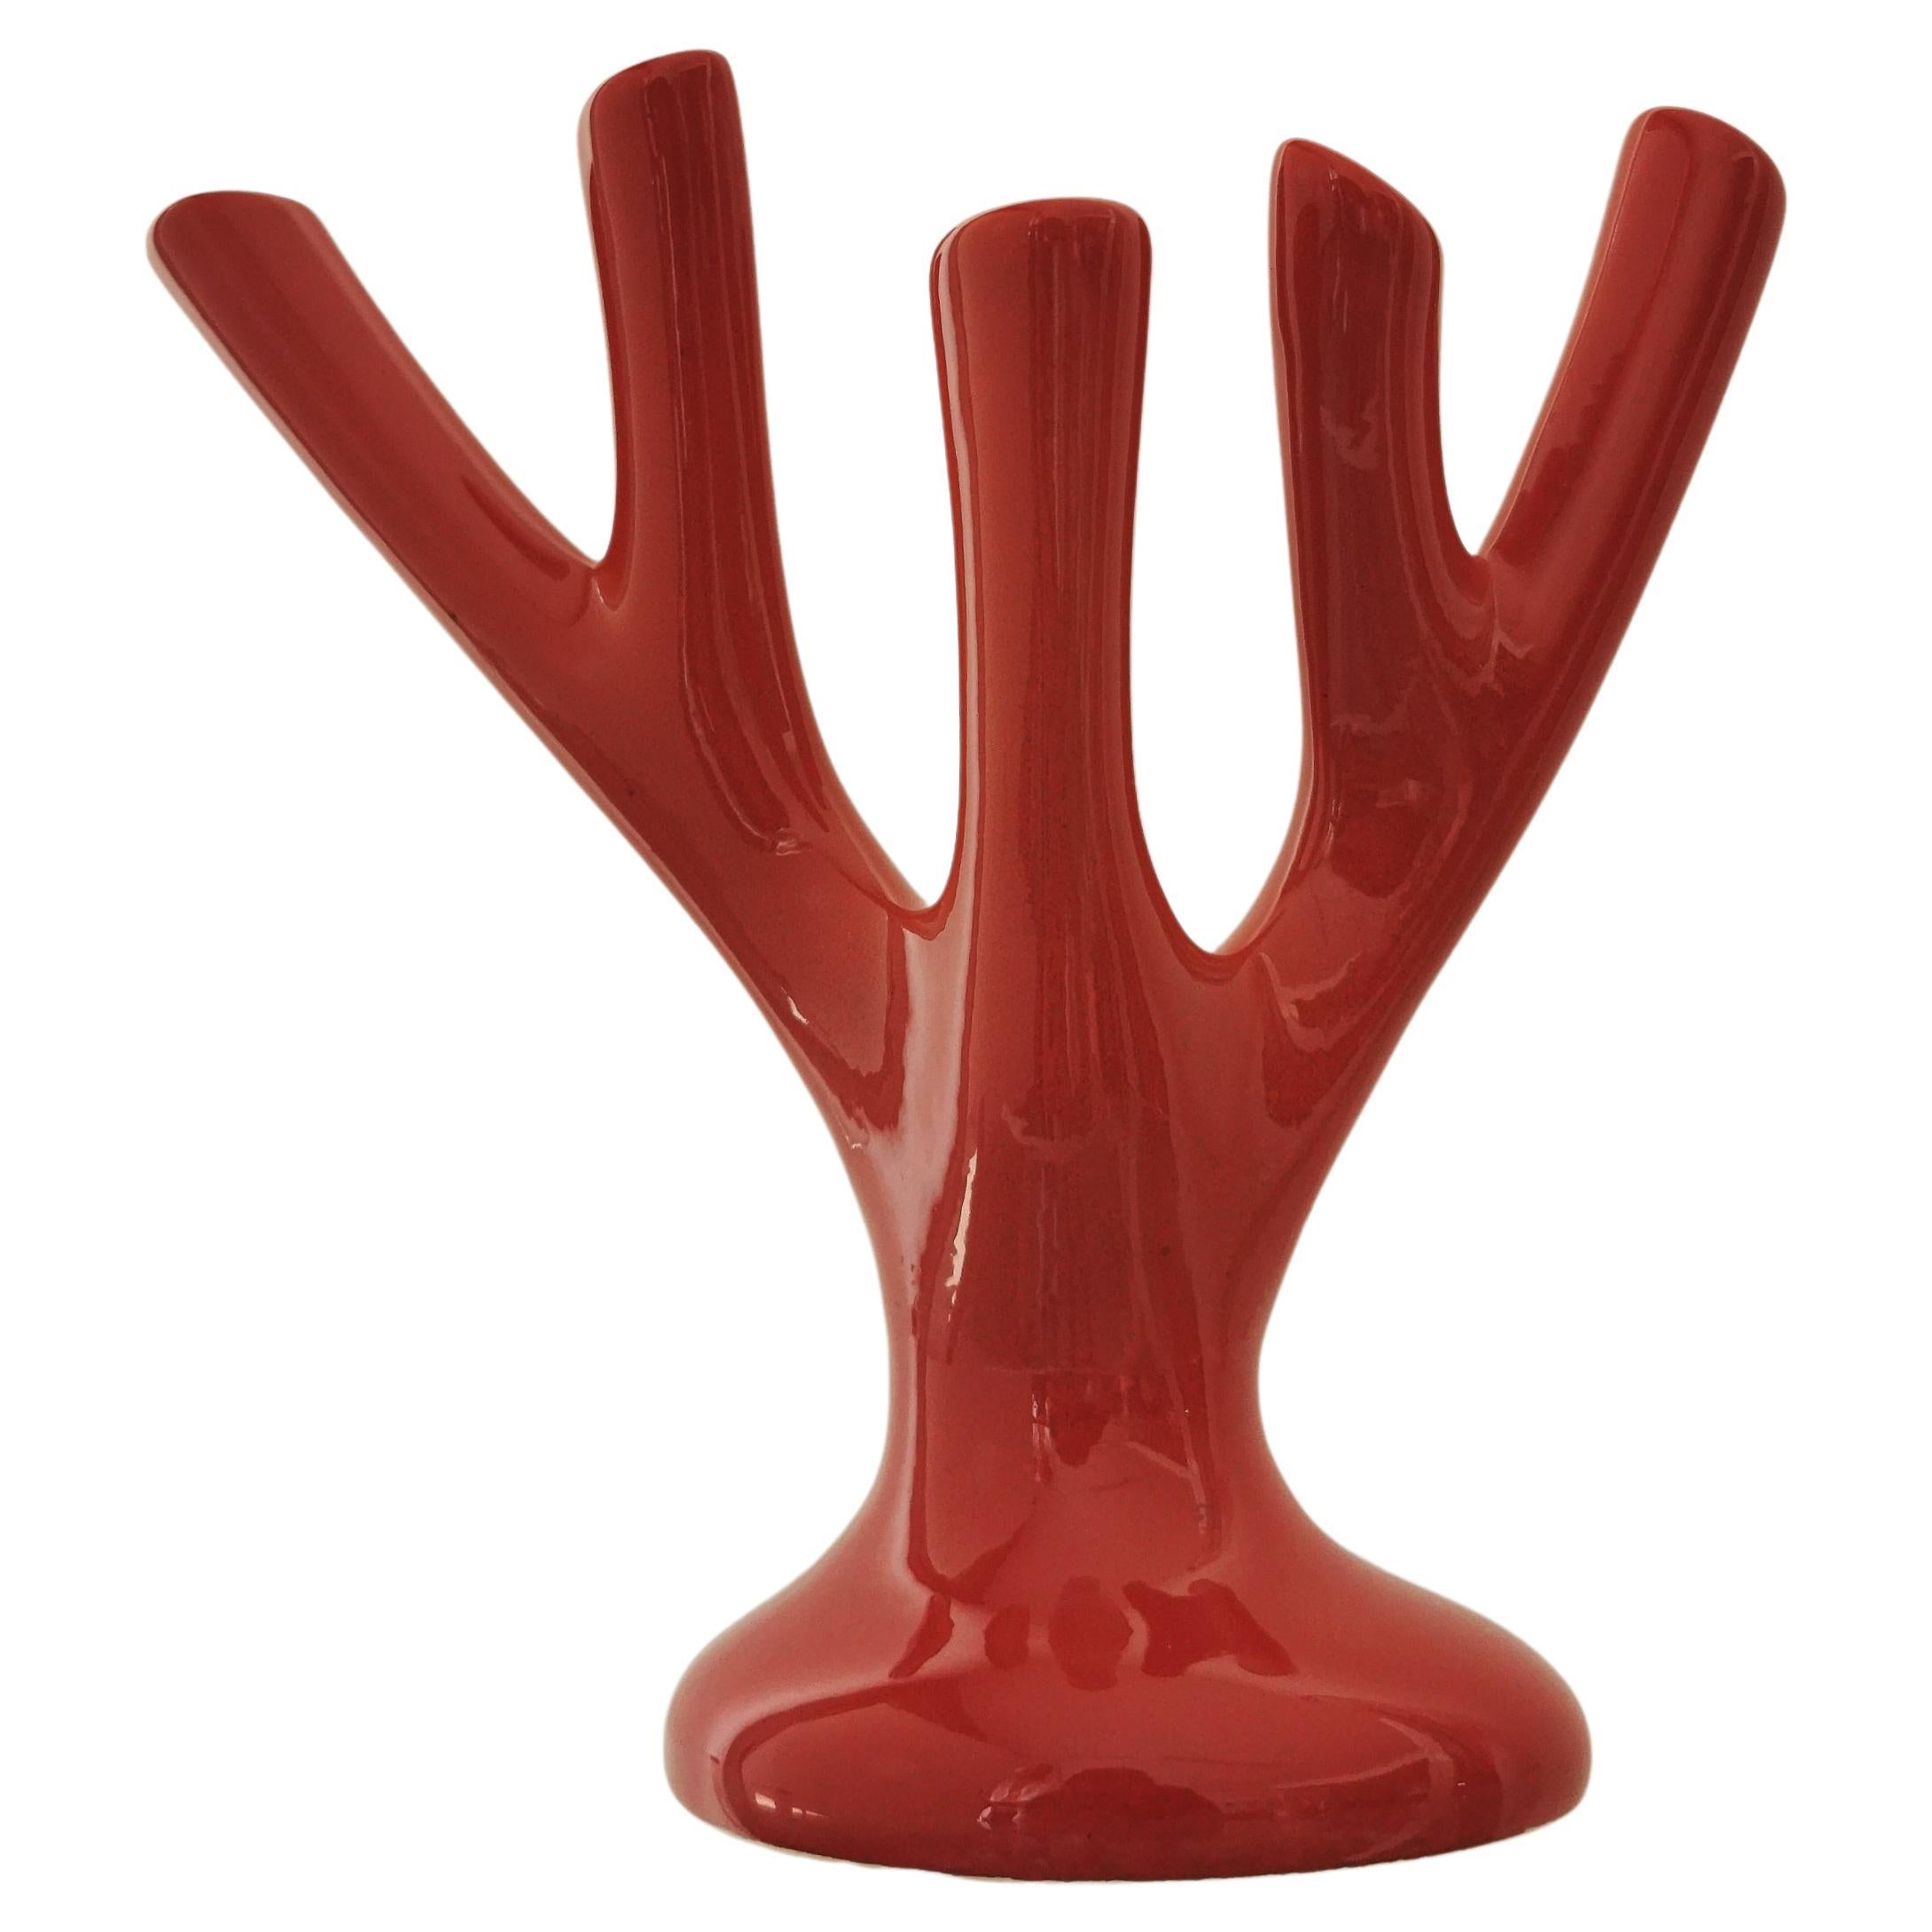 Vase Sculpture Red Ceramic Coral Flower Holder Midcentury Italian Design, 1970s